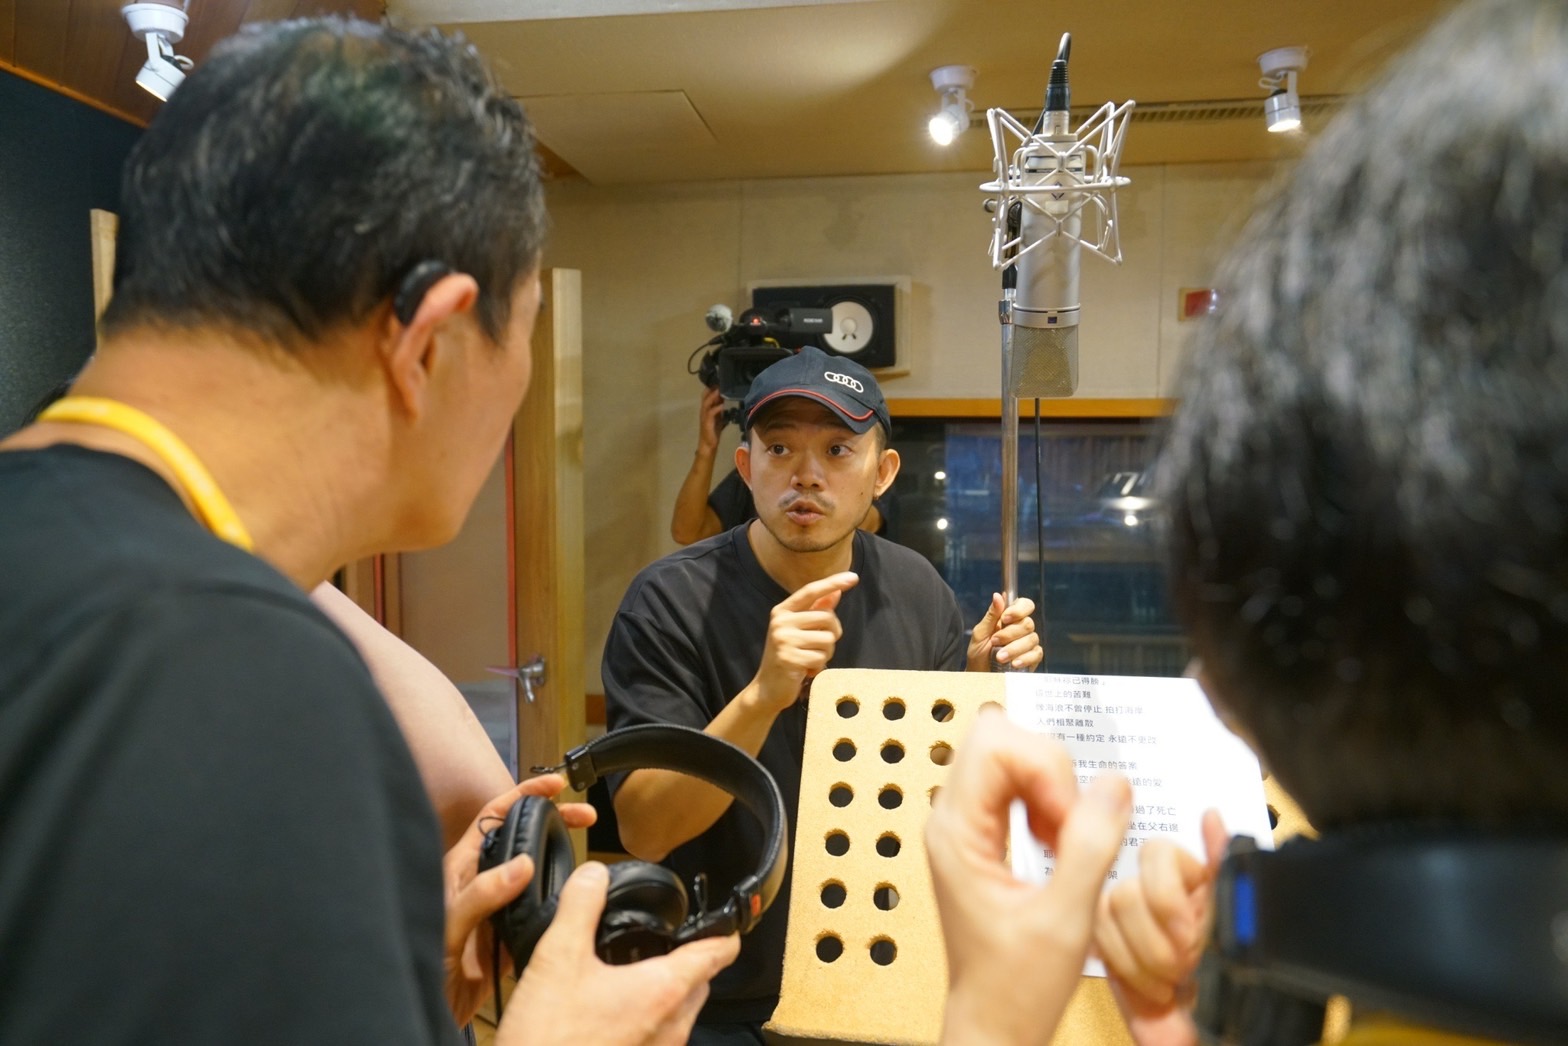 蕭文凱老師帶領大家錄製天韻的歌曲「耶穌祢已得勝」。